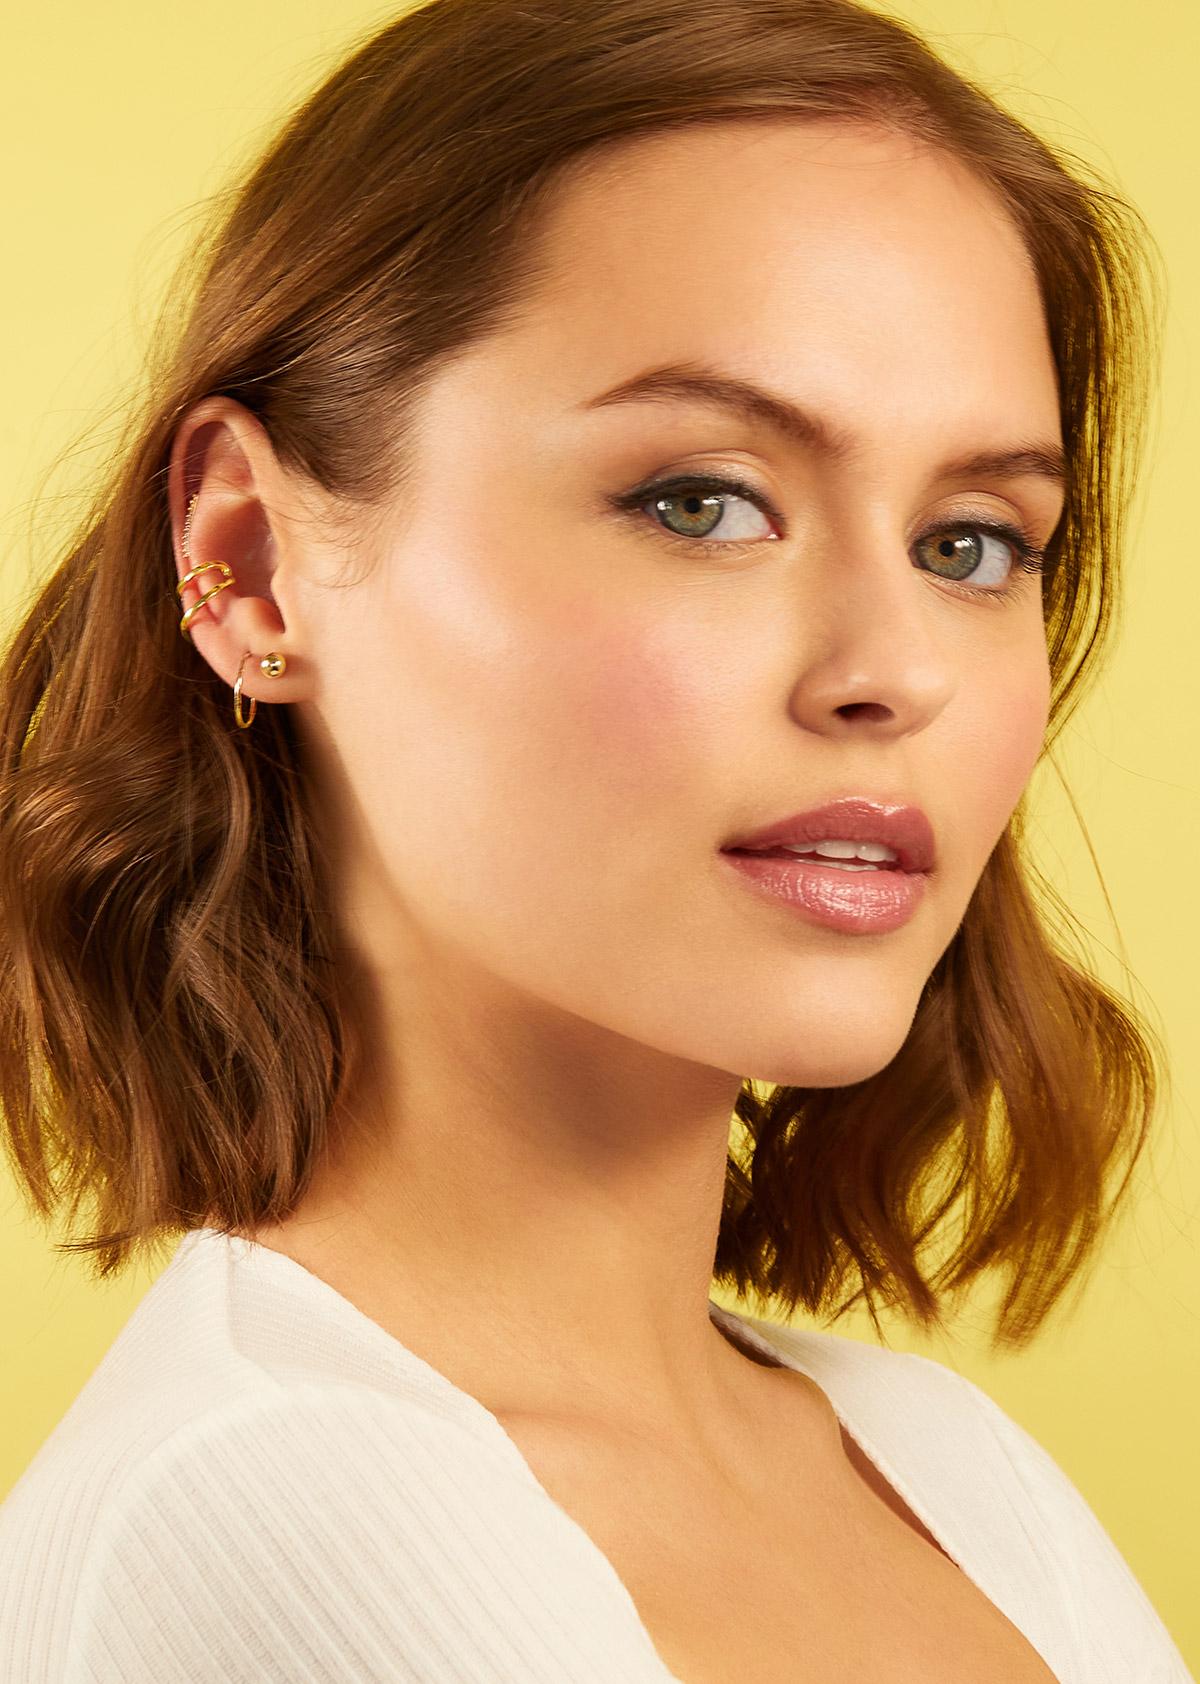 Woman wearing gold earrings